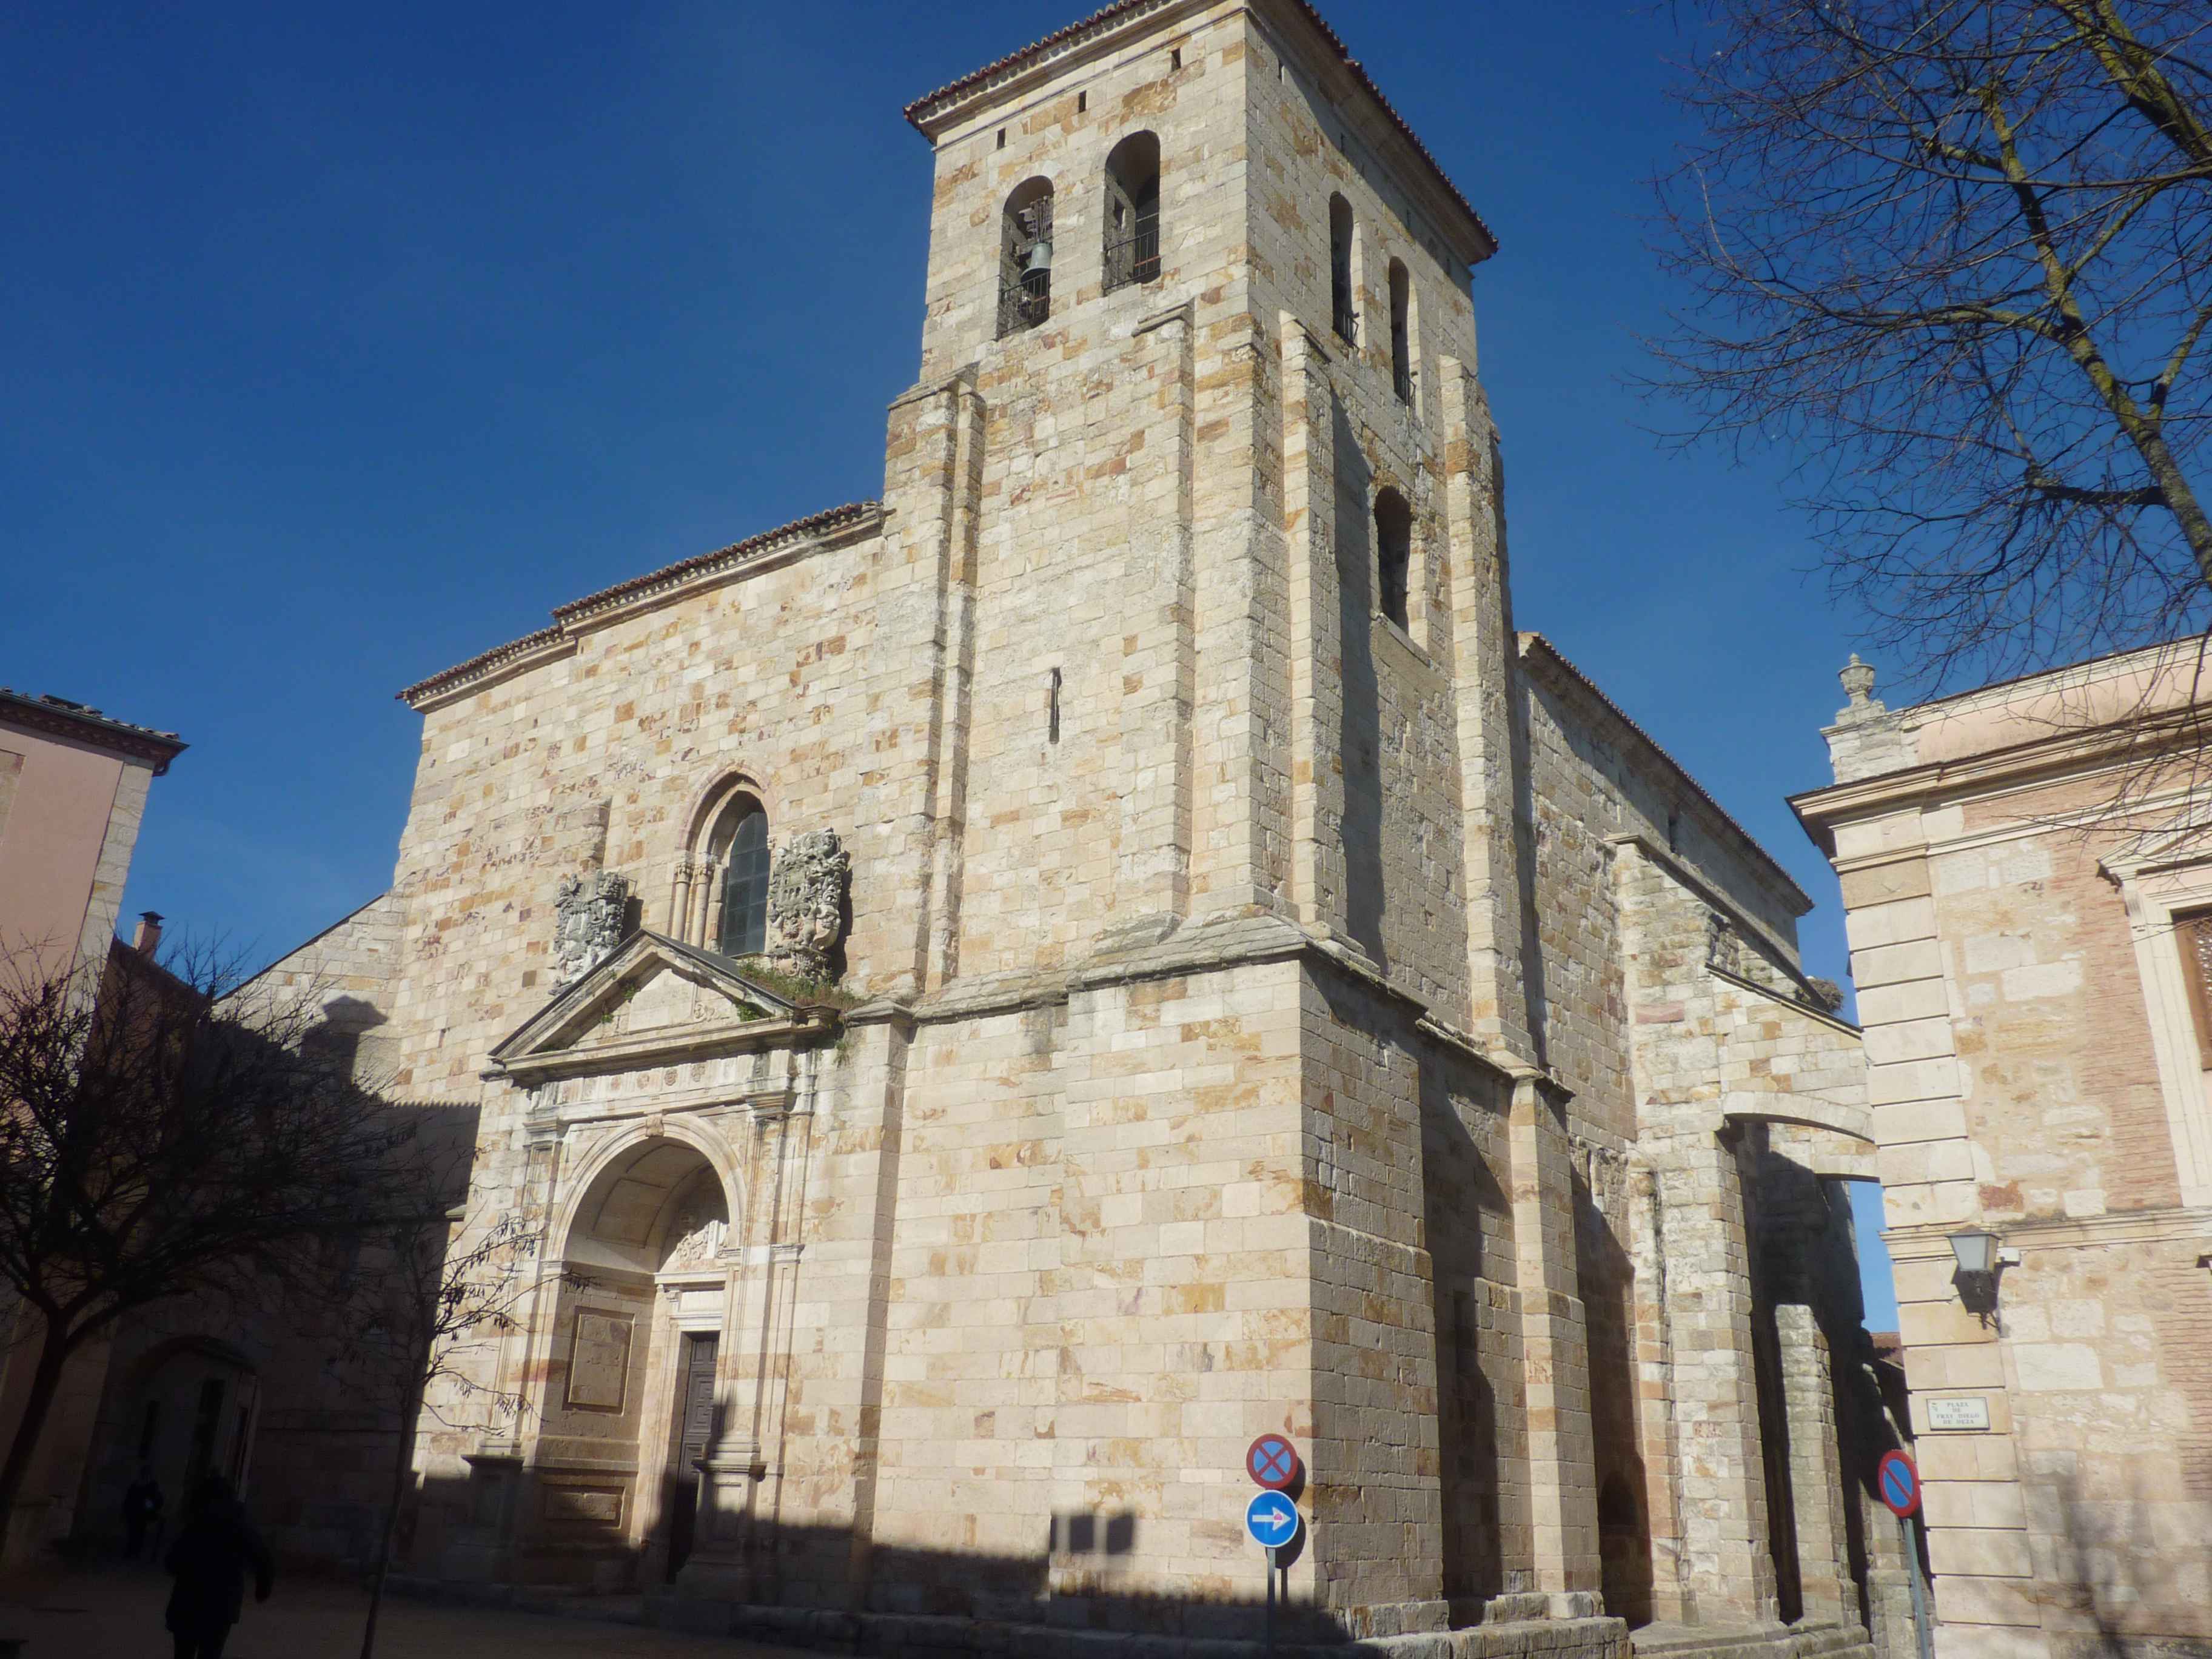 Encore Une Magnigique Eglise Dans Les Fortifications De Zamora en Images